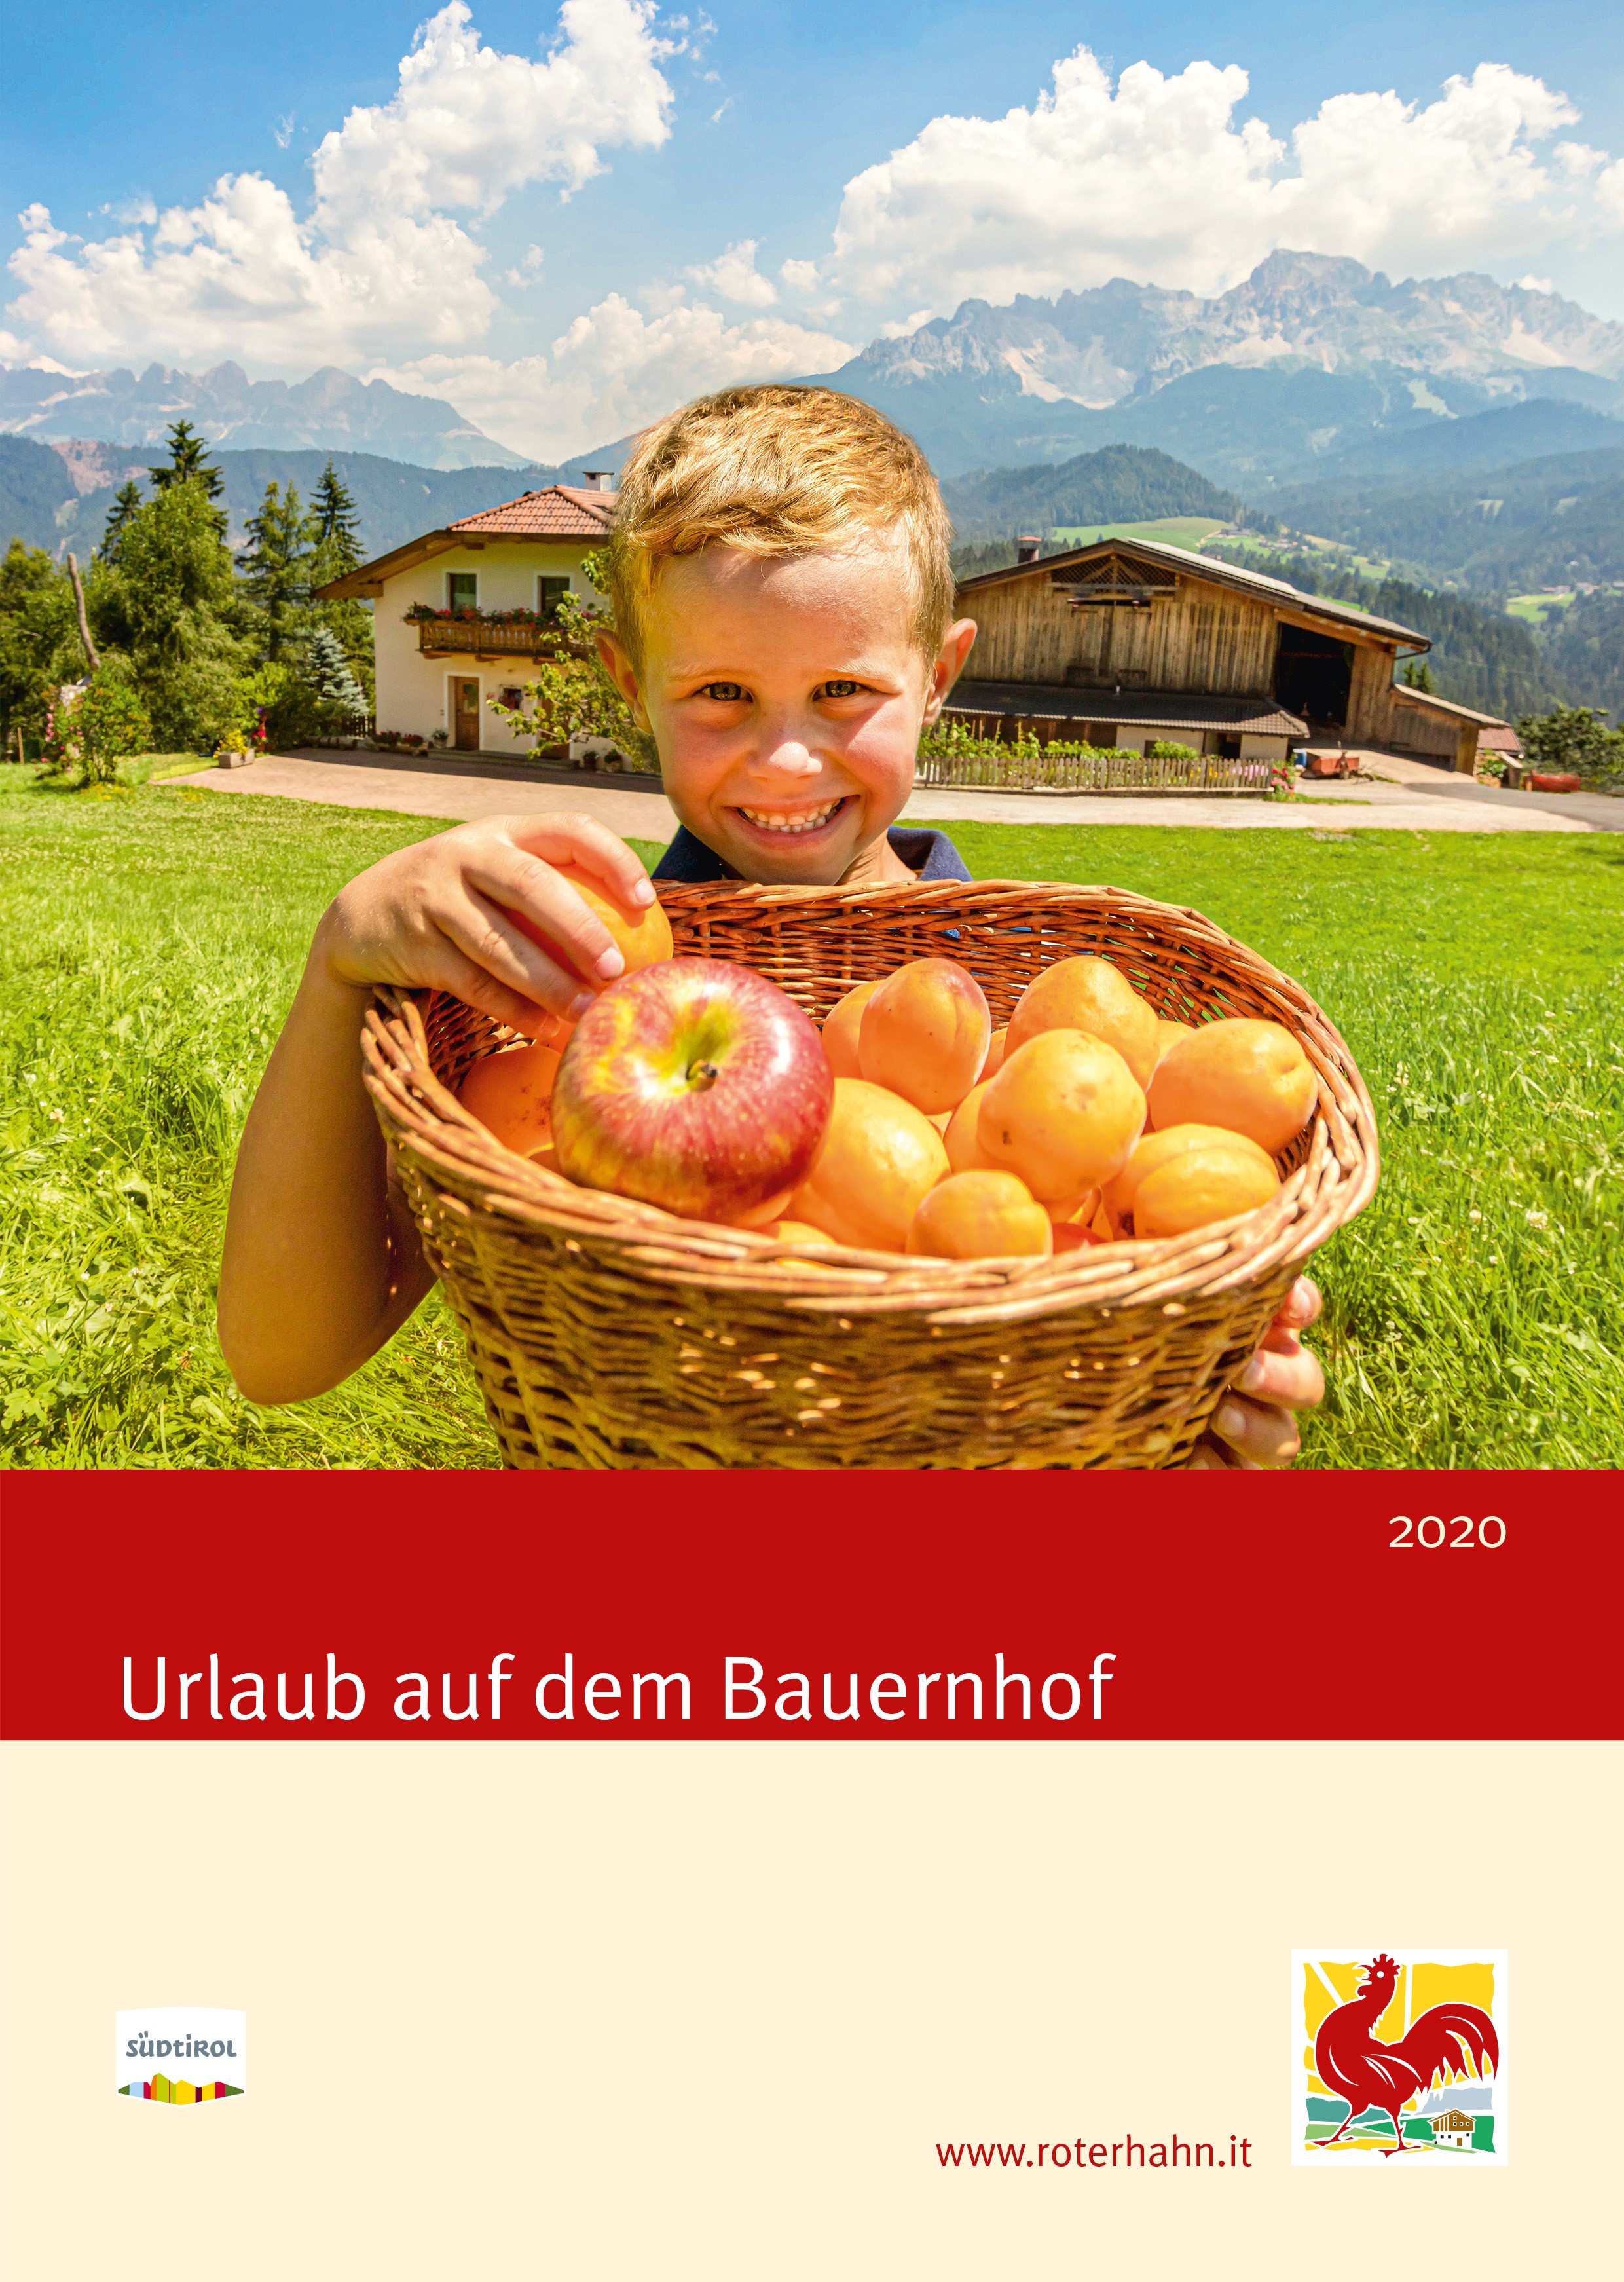 Südtiroler Marke „Roter Hahn“: Neuer Katalog „Urlaub auf dem Bauernhof 2020“